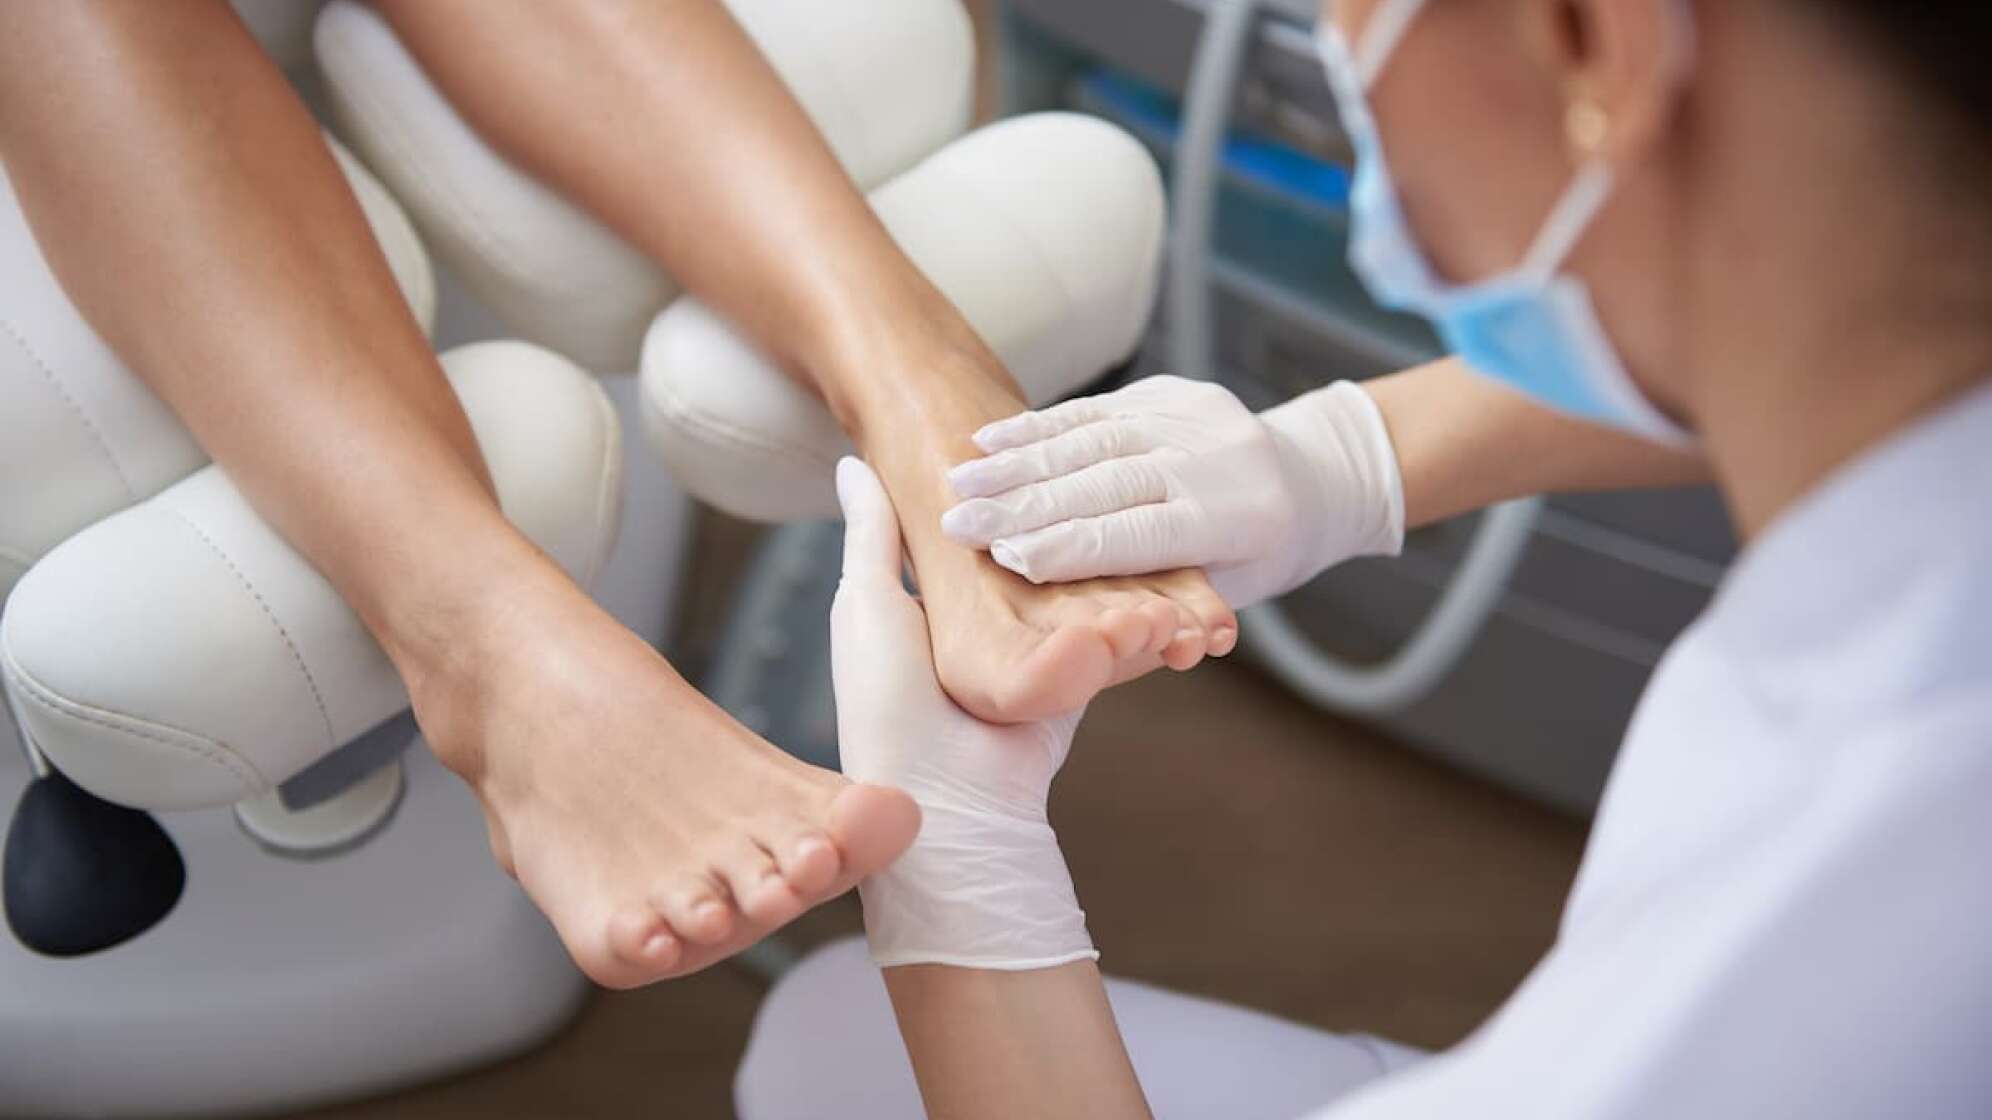 Für alle fleißigen Füße: Regelmäßige Pflege entspannt und beugt Schmerzen vor